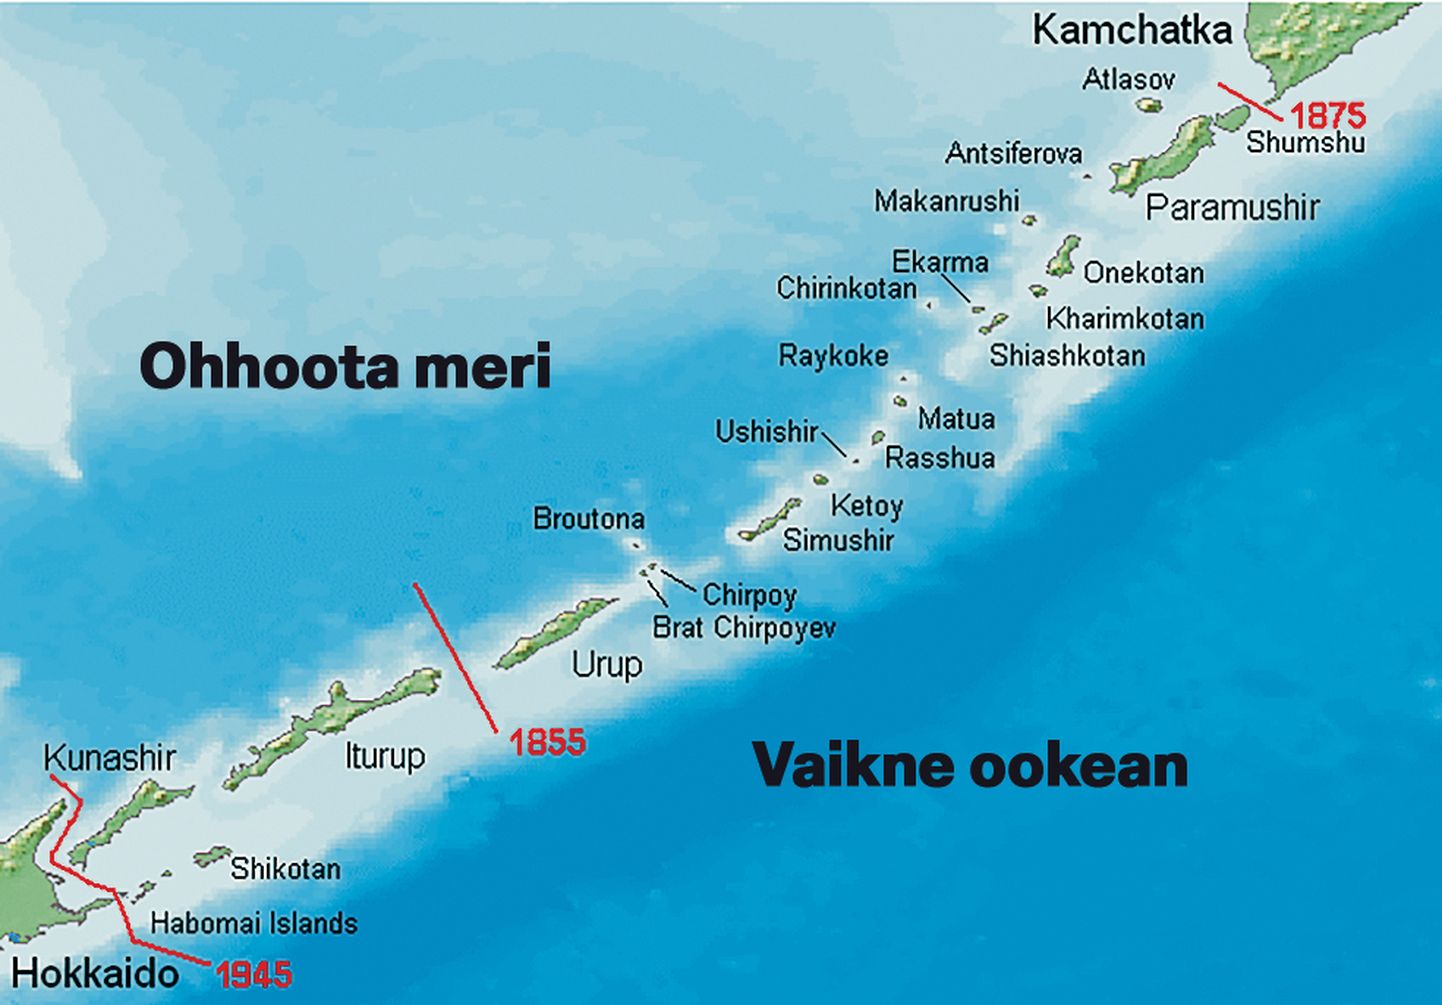 JAAPAN pretendeerib saartele, mis jäävad punasest joonest 1855 lõuna poole. 1855. aasta veebruaris sõlmiti Venemaa ja Jaapani vahel Shimoda kokkulepe, mille järgi läksid need saared Tokyole. 1875. aasta Peterburi kokkuleppe kohaselt loovutas aga Venemaa kõik Kuriili saared Jaapanile ja sai vastutasuks Sahhalini saare. Veel on kaardil punasega märgitud aasta 1945, kui Nõukogude Liit haaras kõik Kuriili saared oma koosseisu.